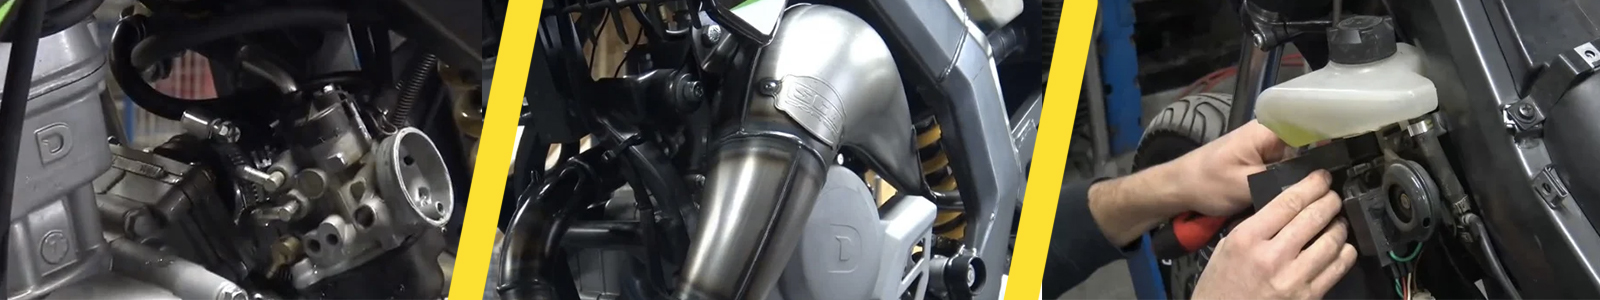 motorcycle engine tutorial 50